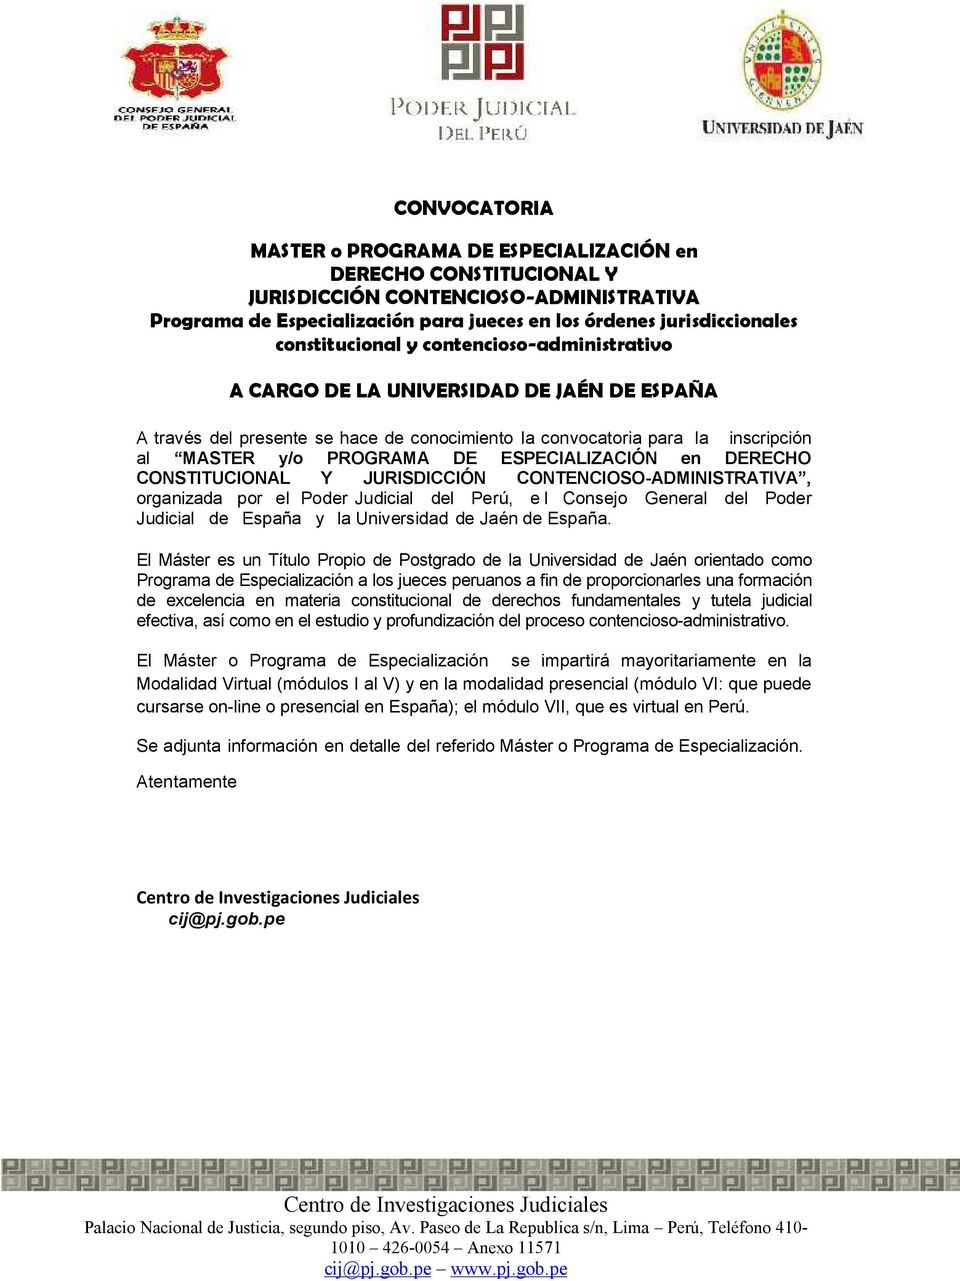 ESPECIALIZACIÓN en DERECHO CONSTITUCIONAL Y JURISDICCIÓN CONTENCIOSO-ADMINISTRATIVA, organizada por el Poder Judicial del Perú, e l Consejo General del Poder Judicial de España y la Universidad de